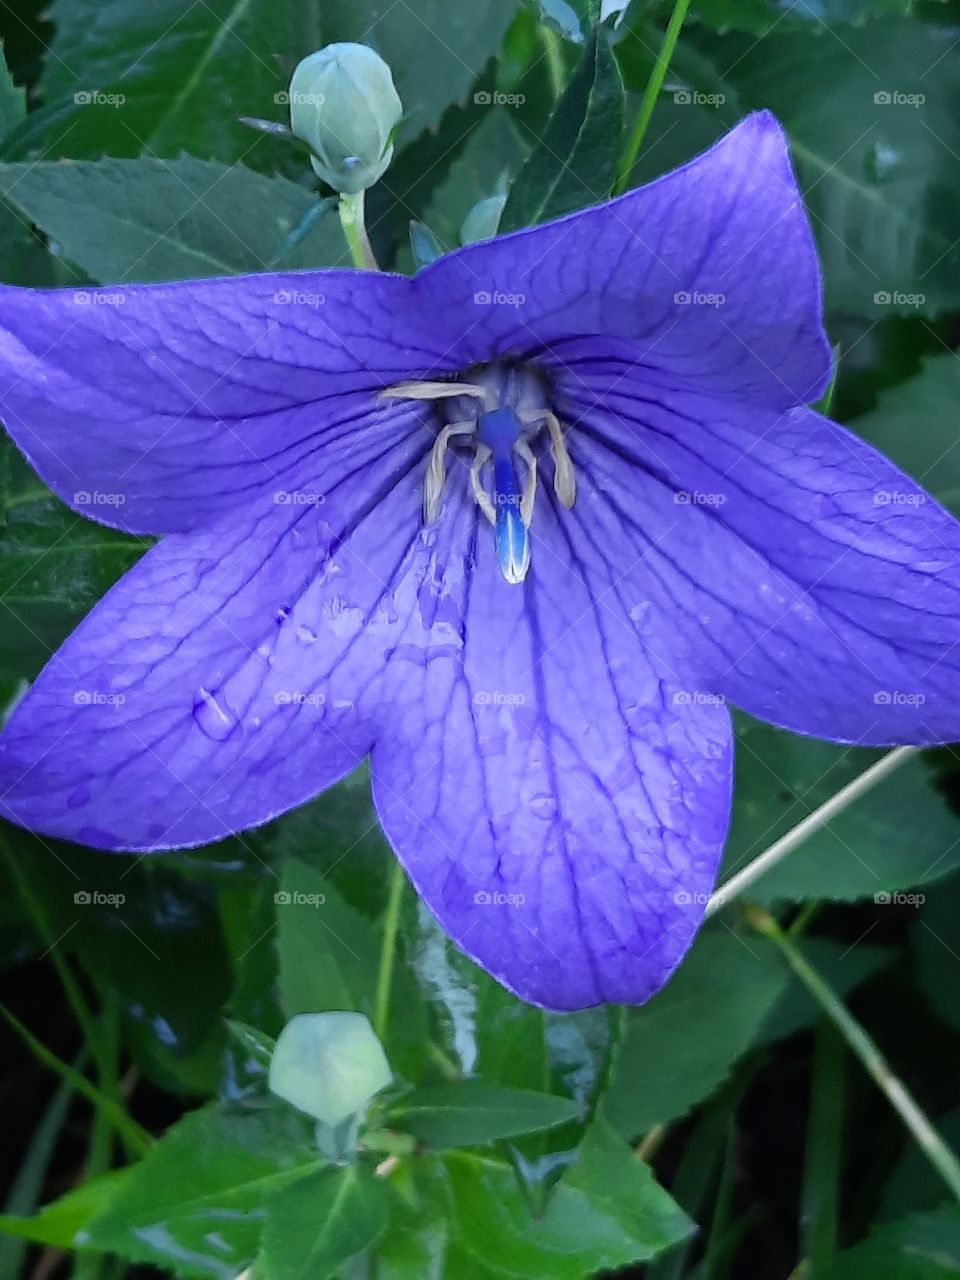 blue platycodon flower in summer garden